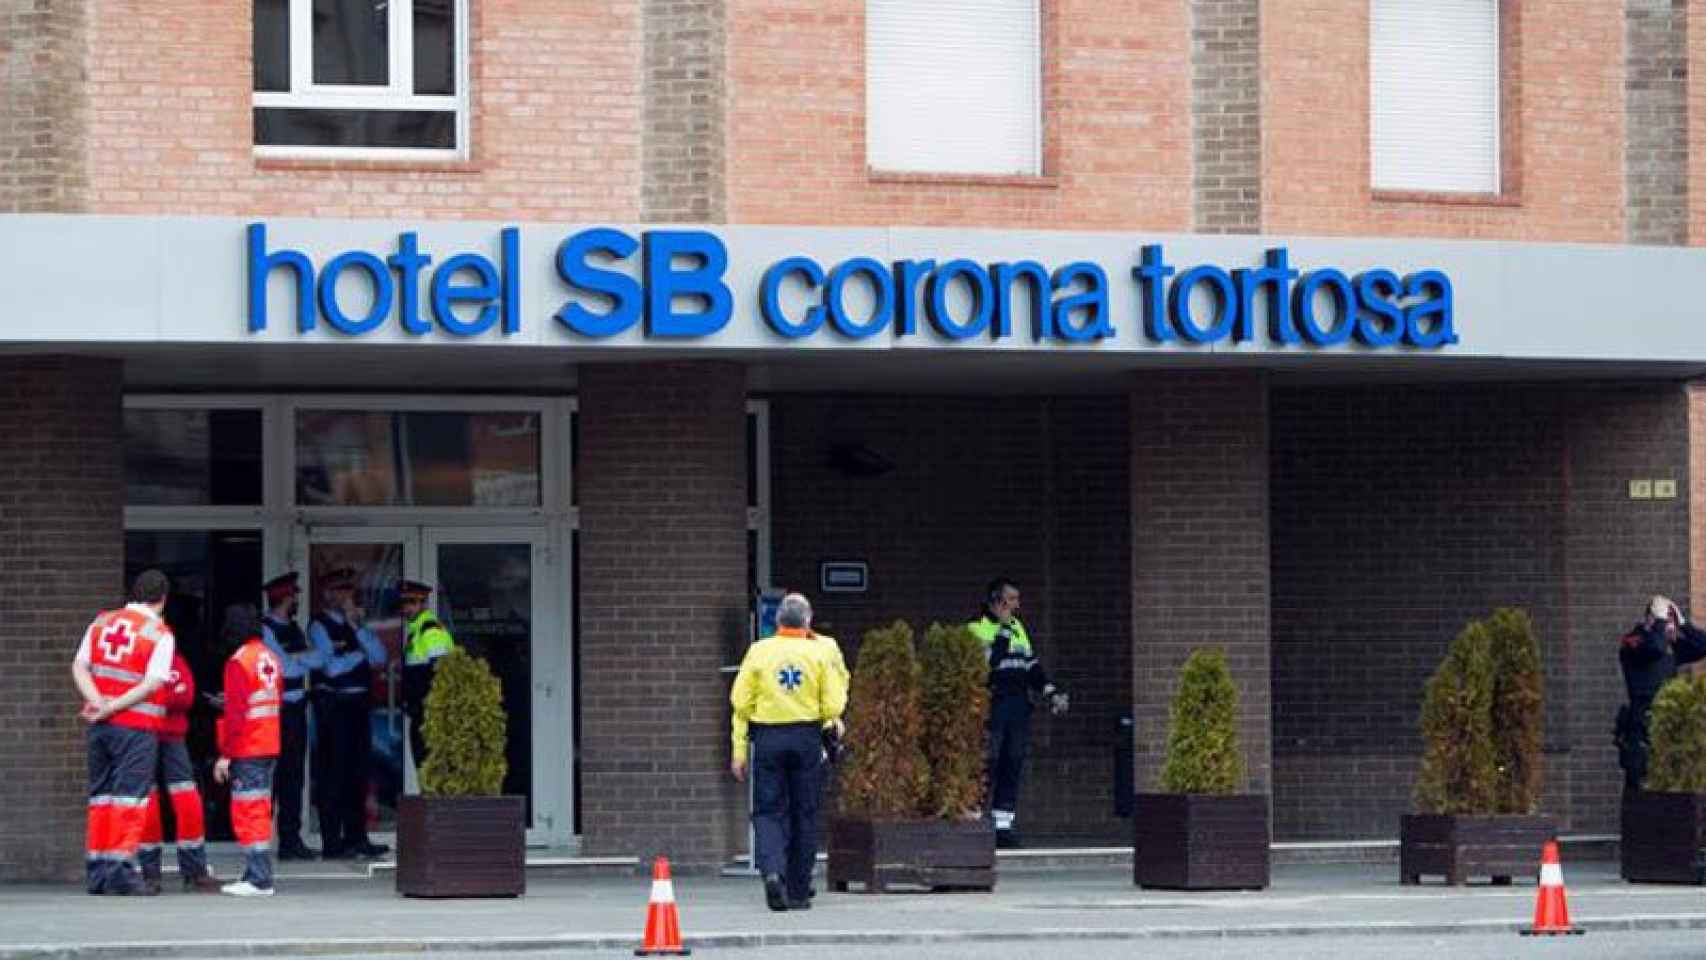 Hotel Corona de Tortosa (Tarragona) ha sido habilitado como centro de operaciones del trágico suceso.